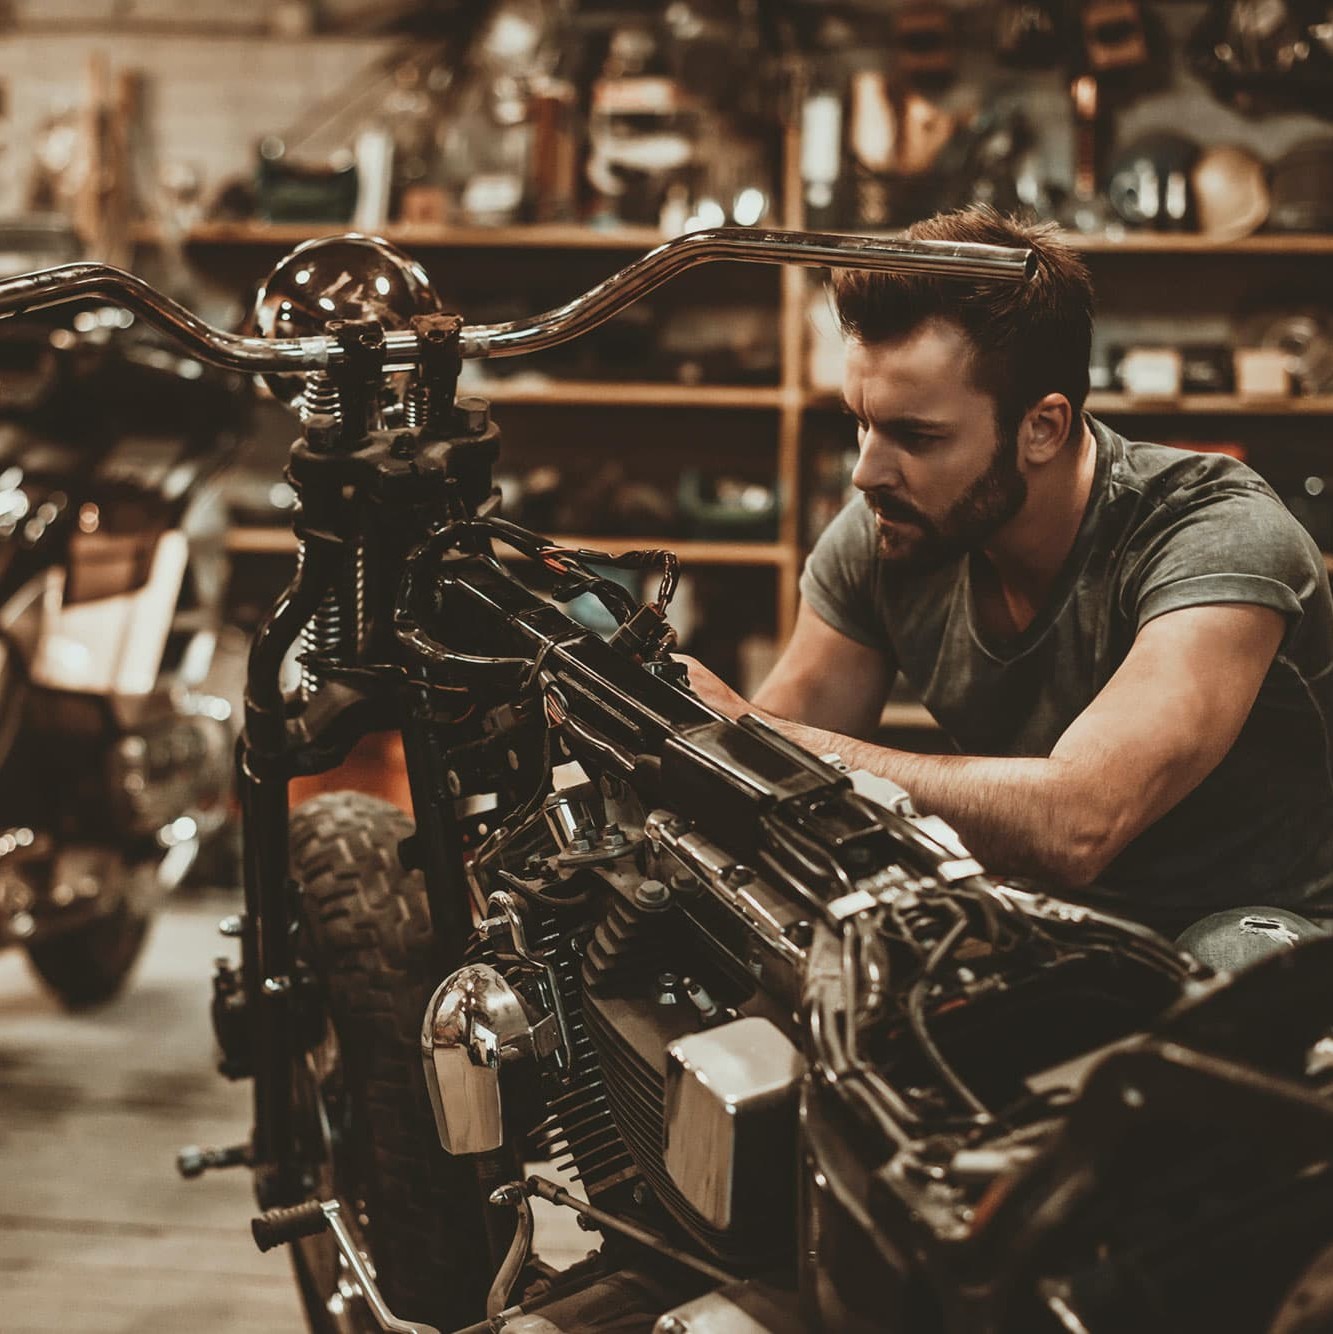 Deine Motorrad-Werkstatt in der Garage